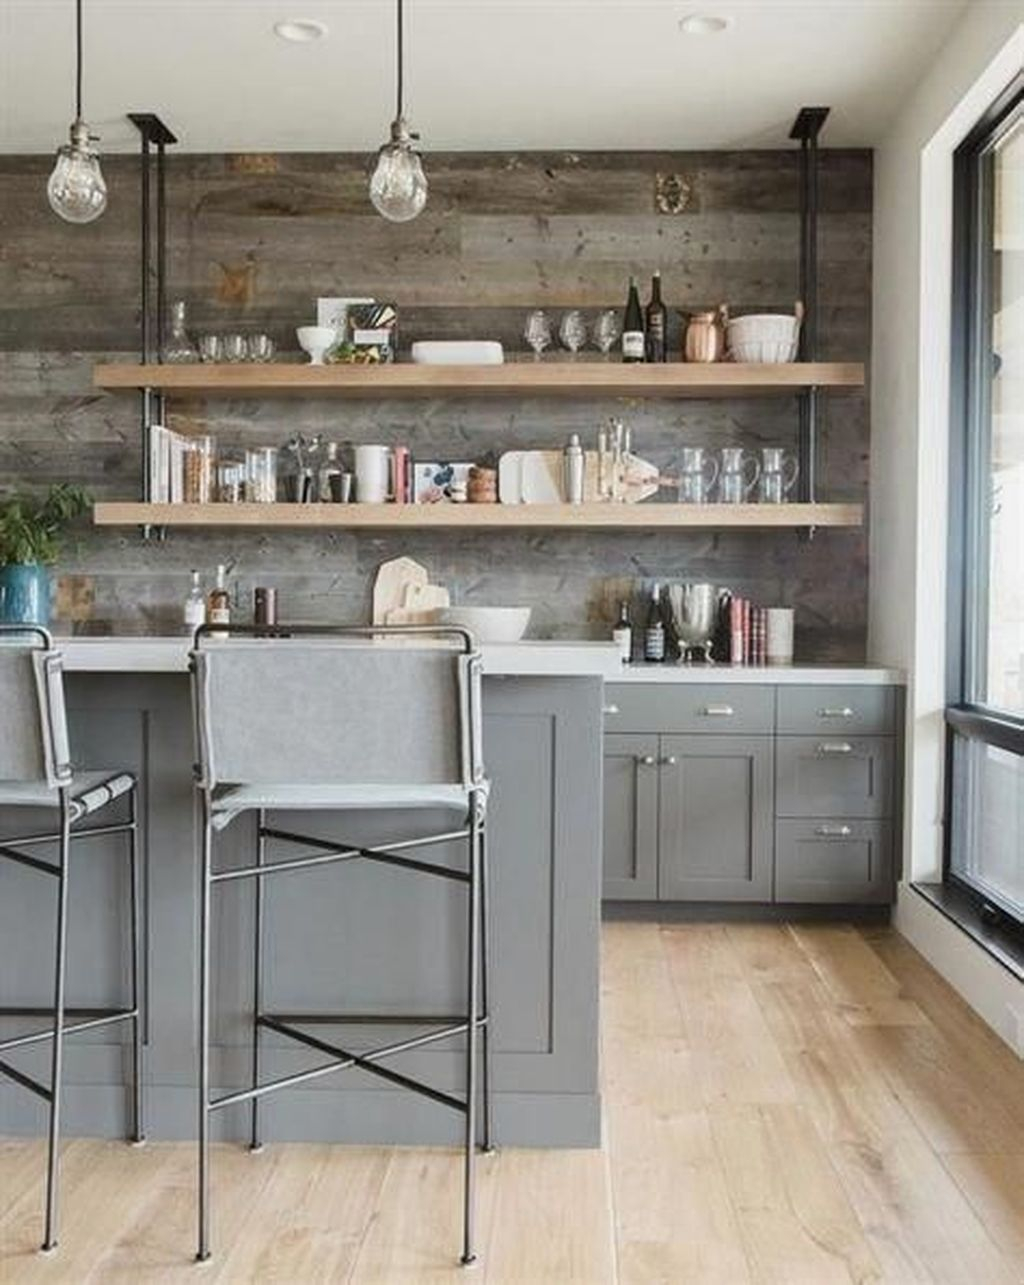 Wonderful Industrial Kitchen Shelf Design Ideas To Organize Your Kitchen04